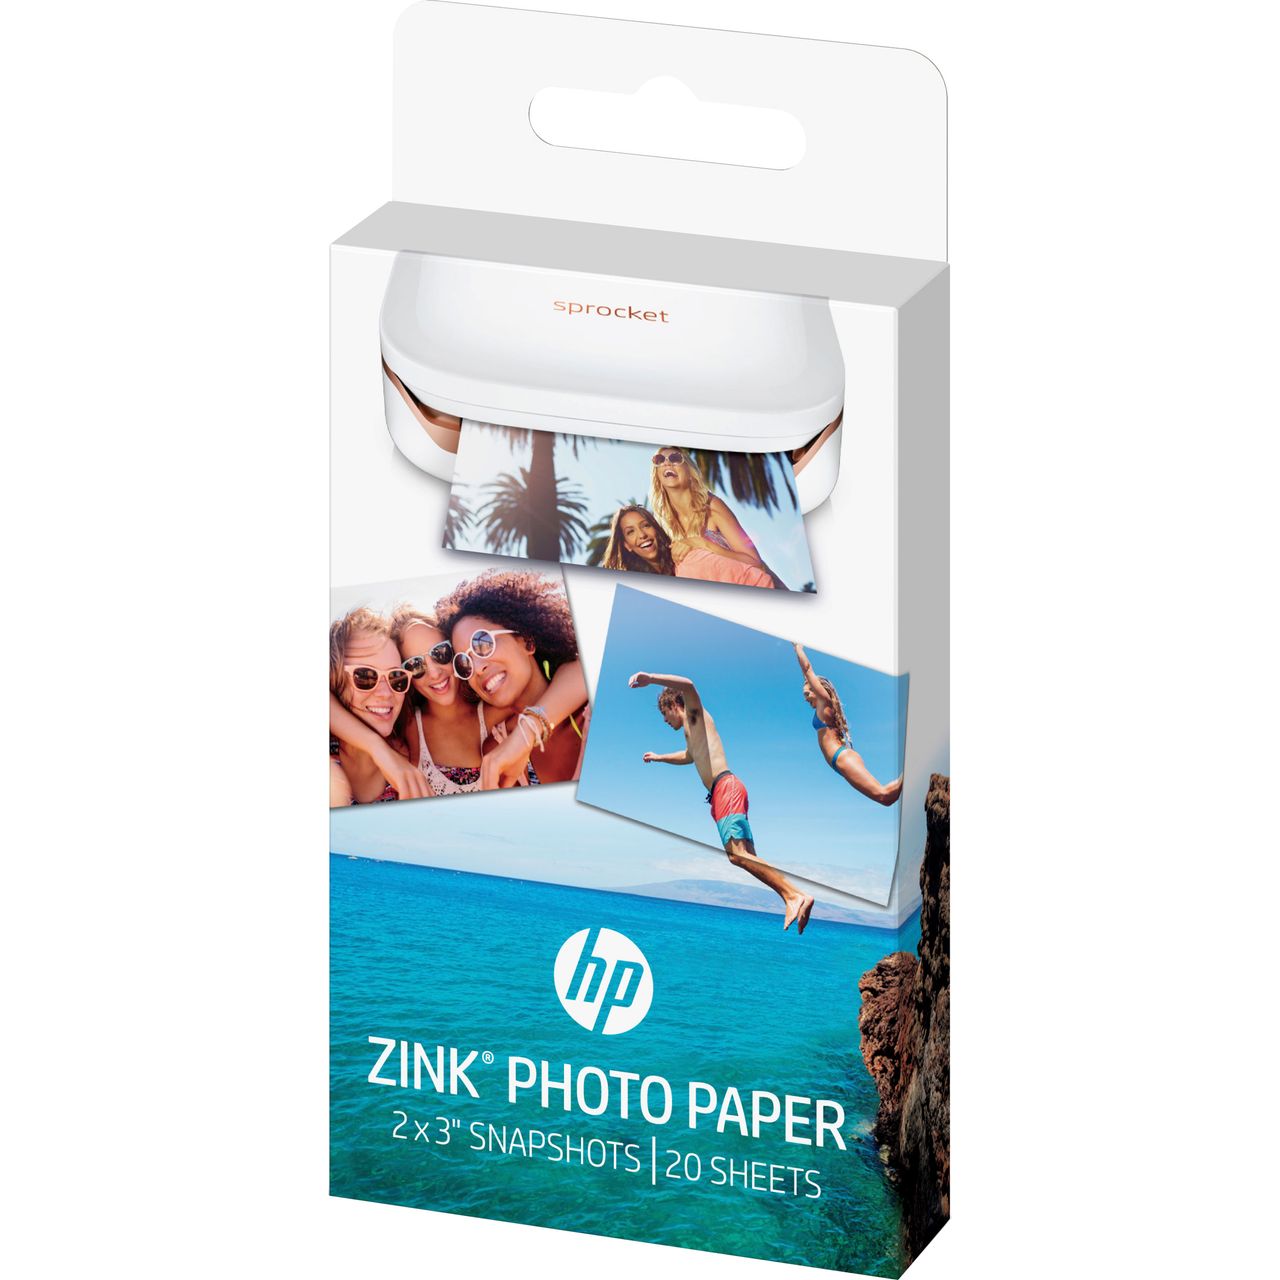 HP Sprocket Photo Paper ZINK Sticky-backed 2